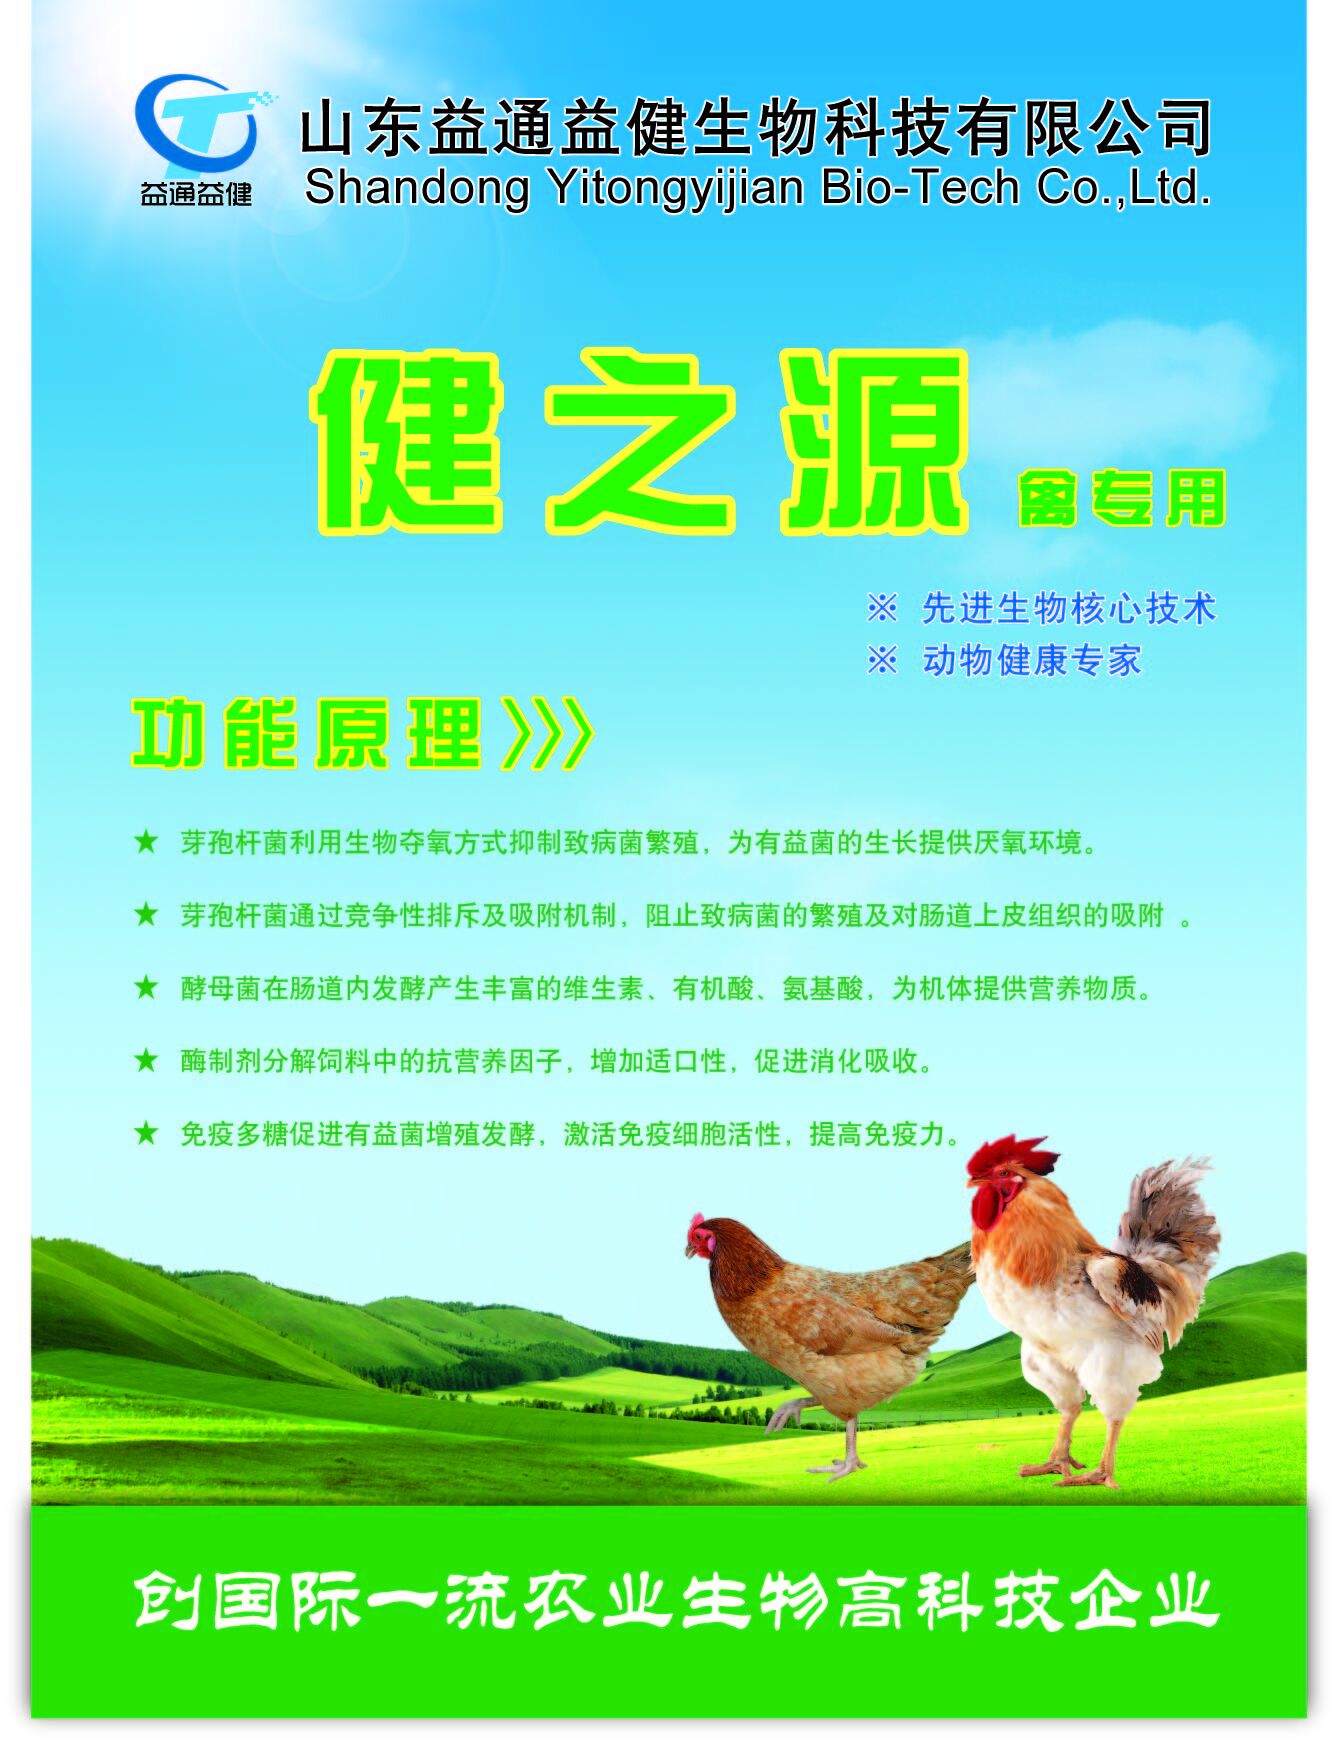 四川微生态制剂厂家介绍鸡鸭鹅长得好长得快并且可以治疗肠道疾病的饲料添加剂爱